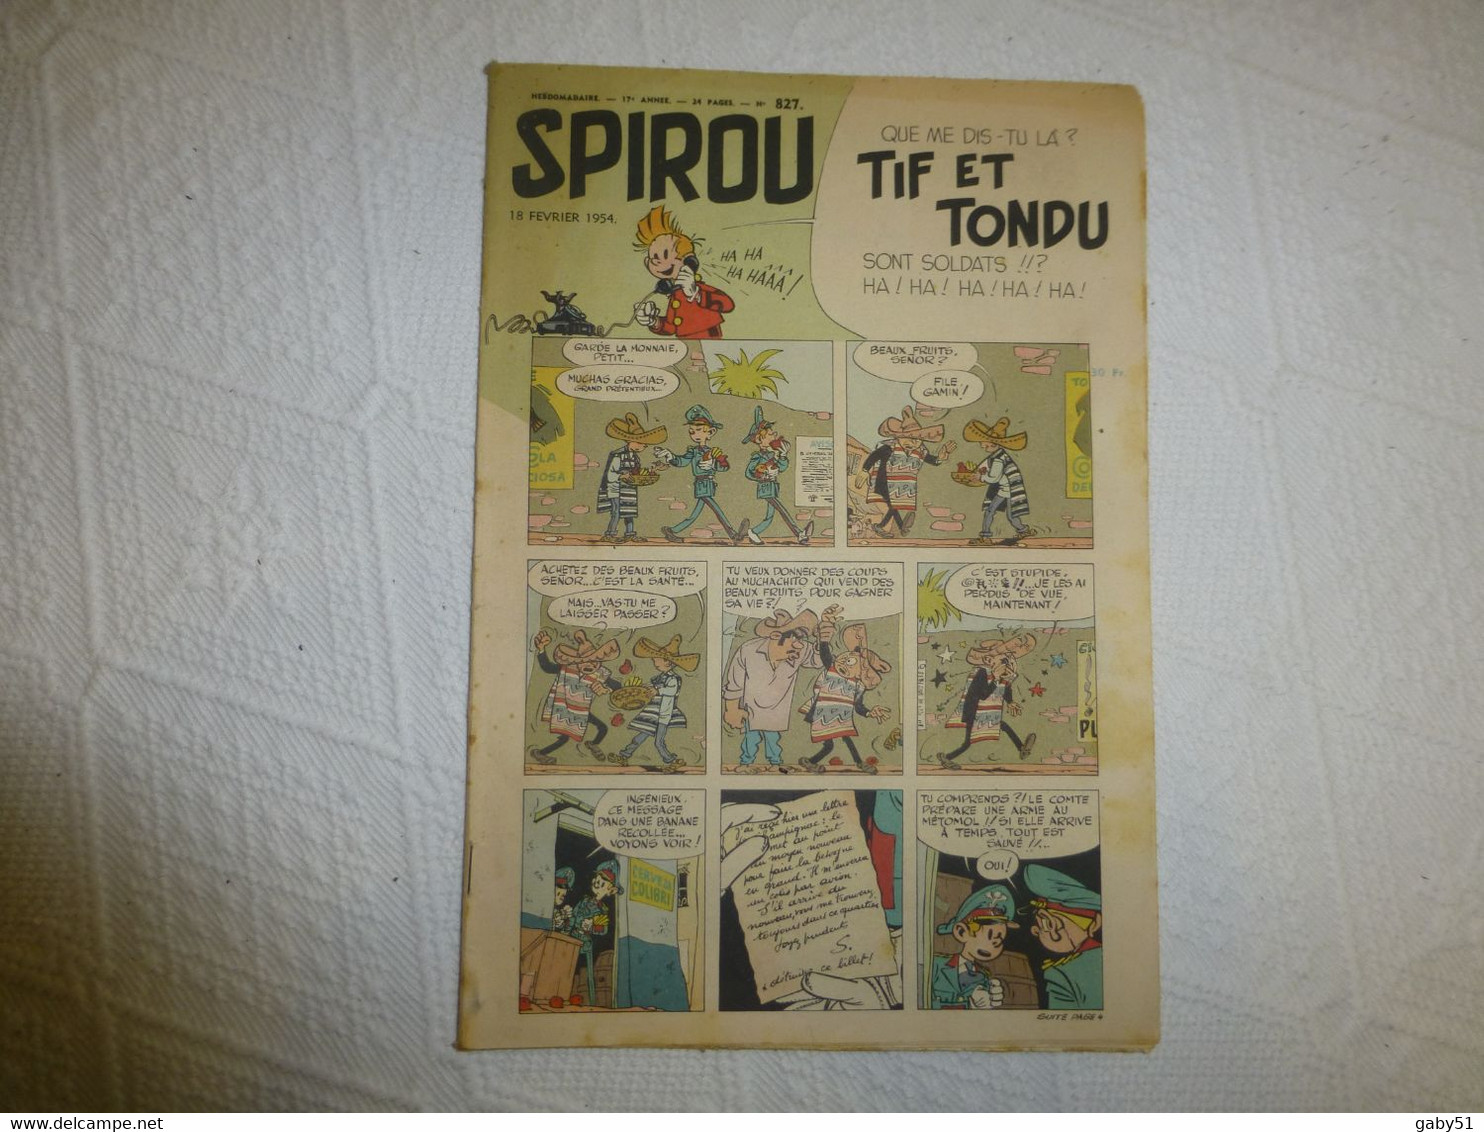 SPIROU N° 827, 18 Février 1954,  ; REV 05 - Spirou Magazine